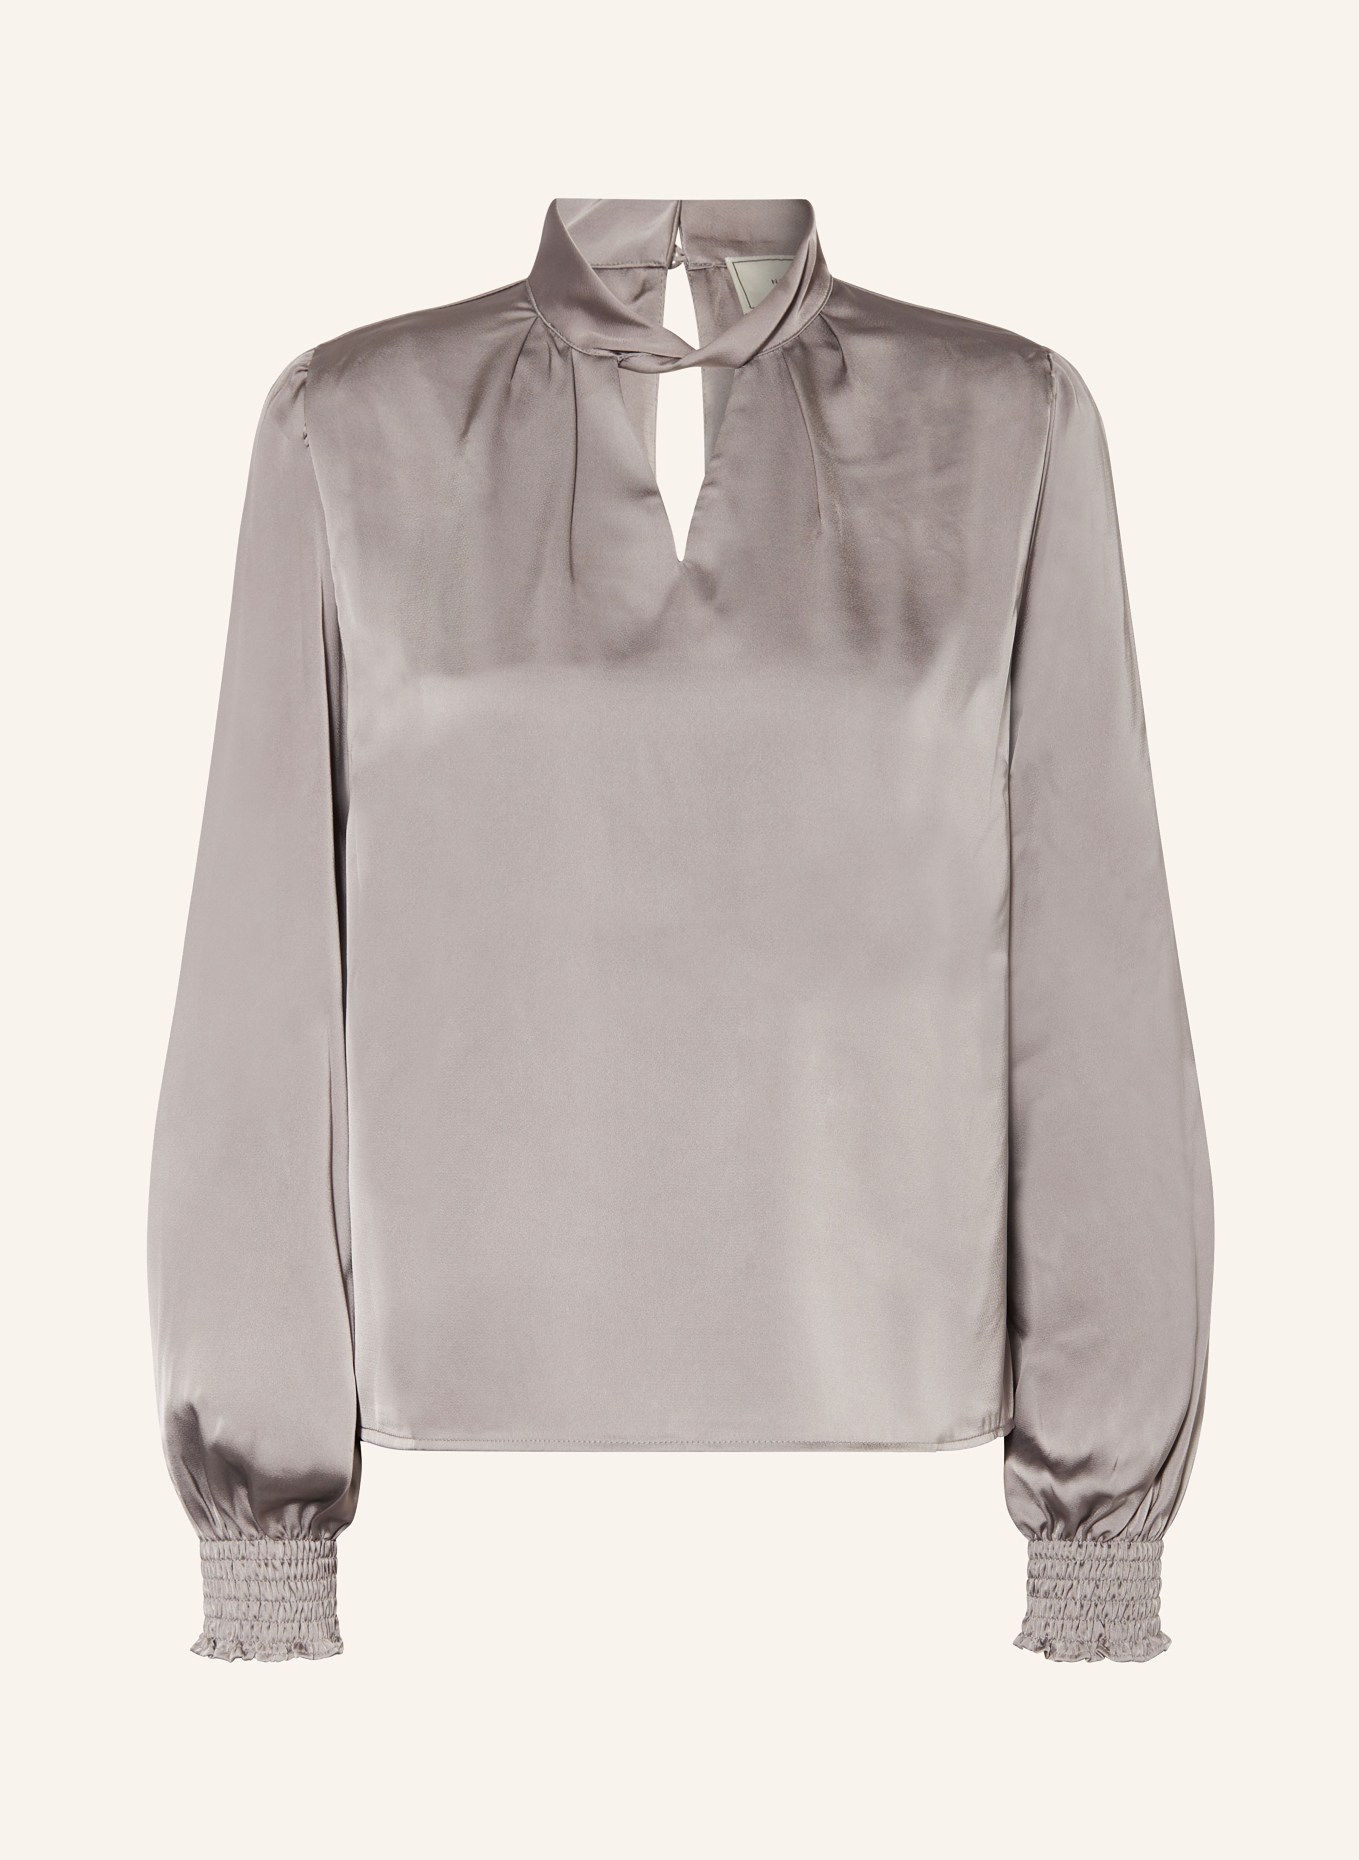 NEO NOIR Shirt blouse BONDO made of satin, Color: GRAY (Image 1)